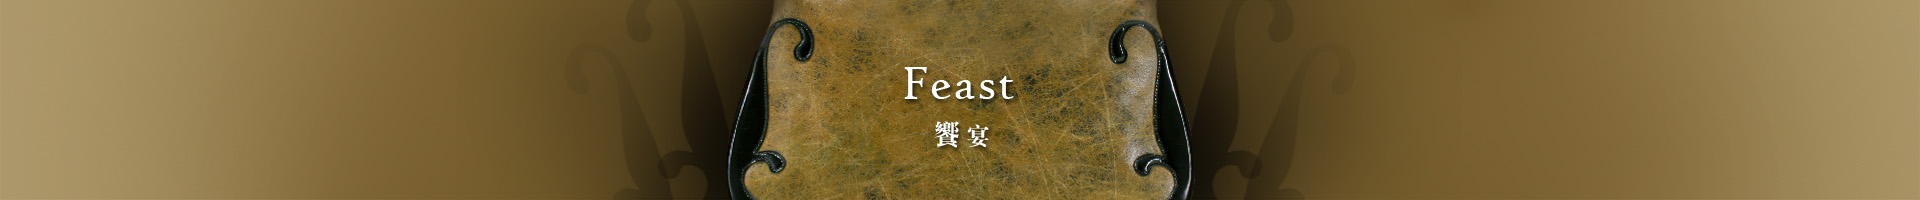 Feast 饗宴